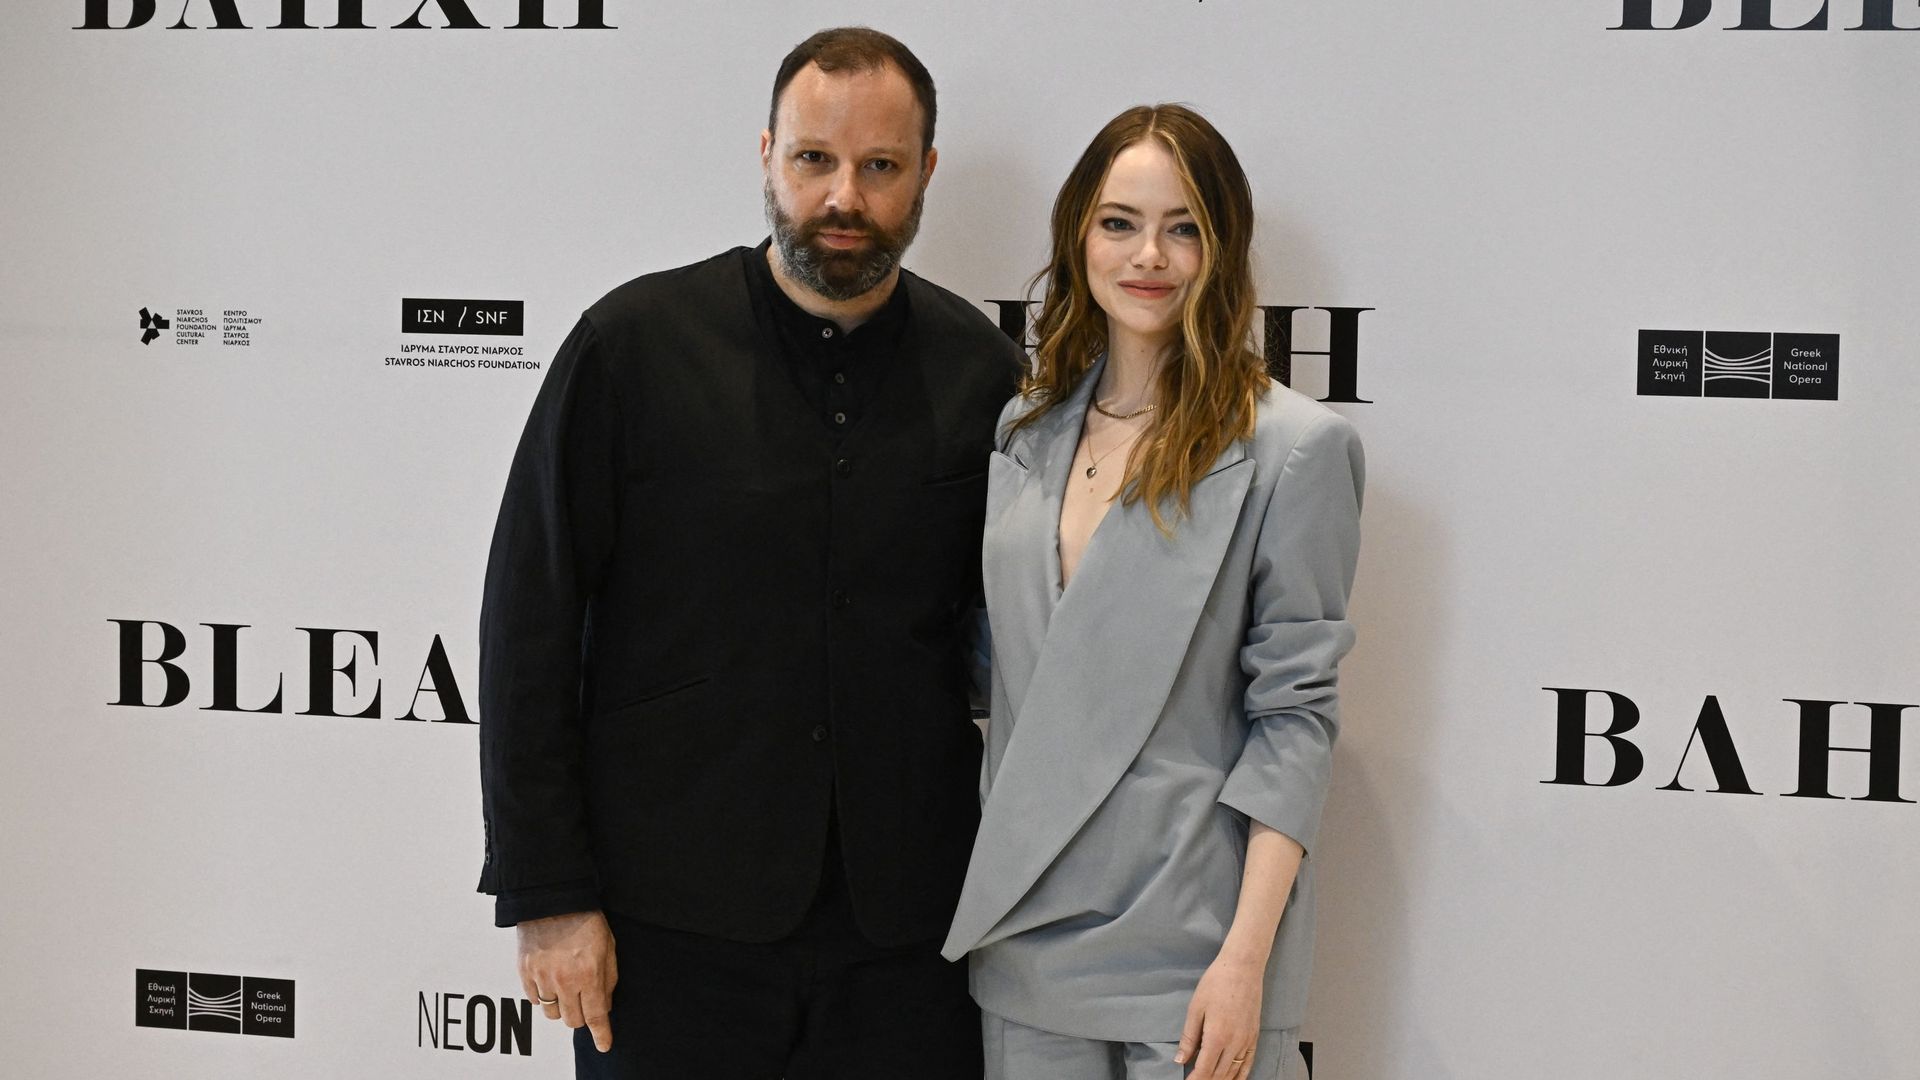 L’actrice américaine Emma Stone et le réalisateur grec Yorgos Lanthimos s’associent à nouveau pour un court-métrage silencieux et sombre, "Bleat".